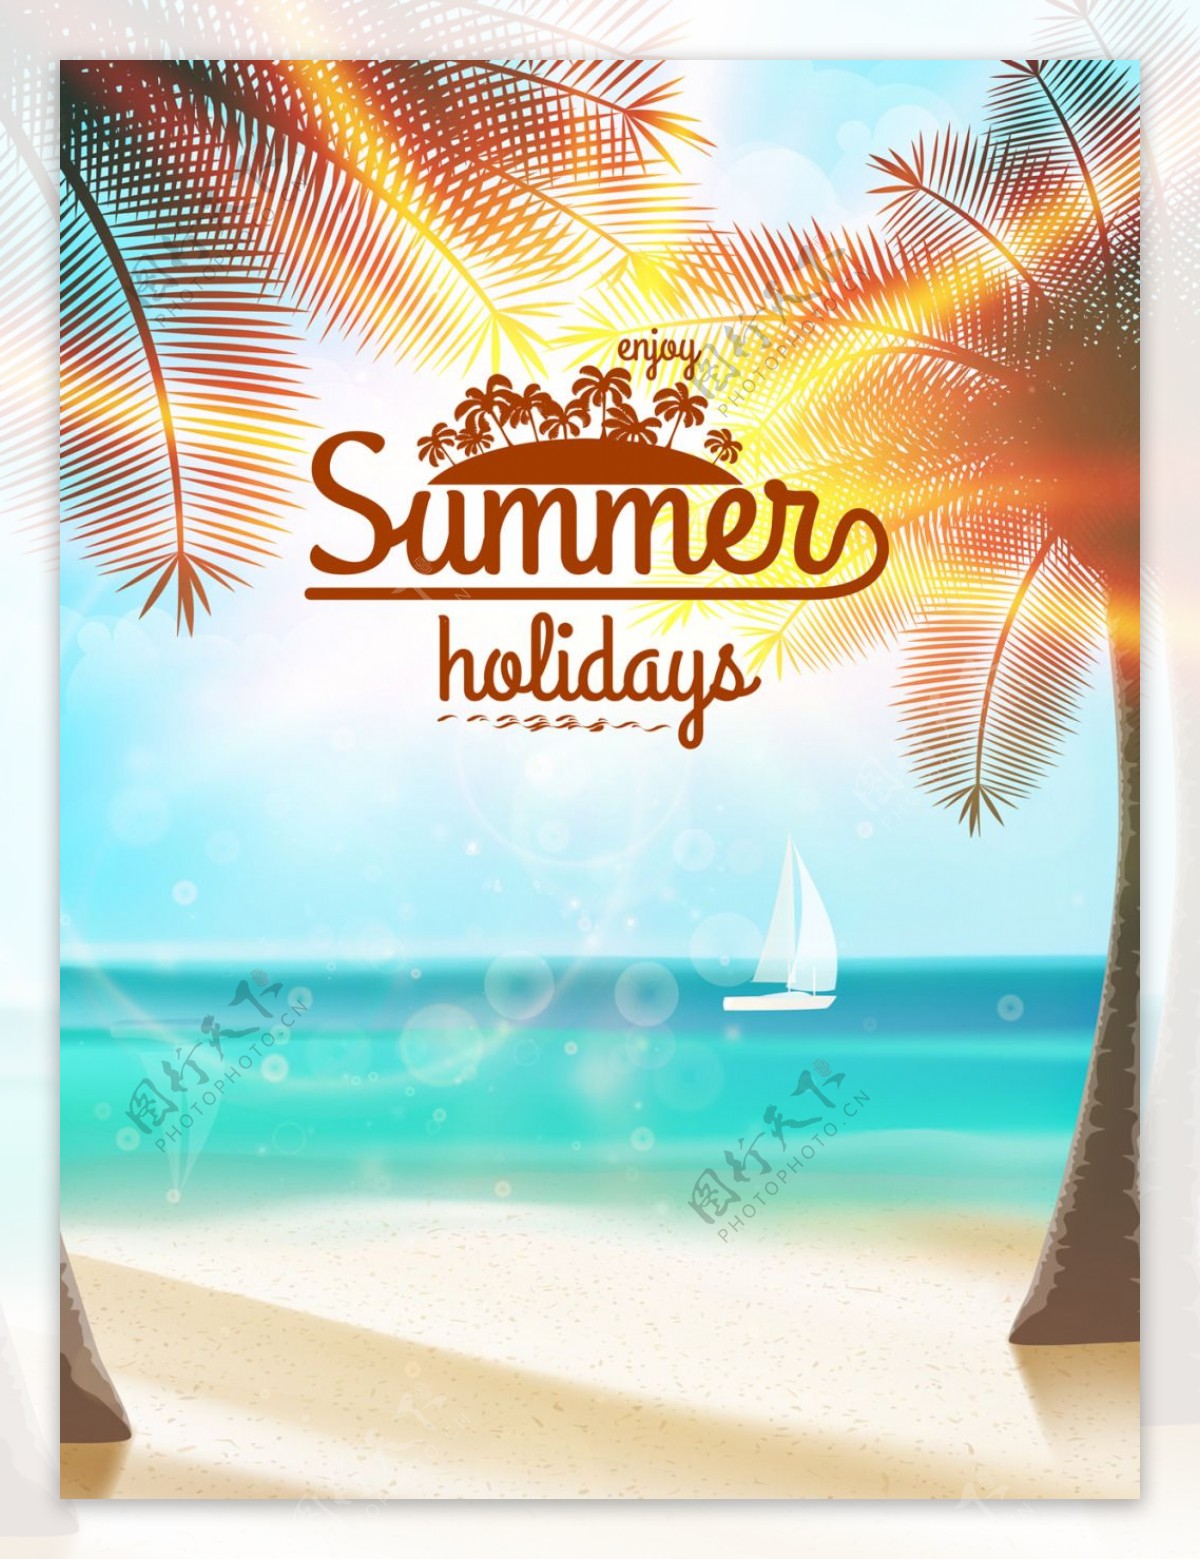 夏日沙滩海报